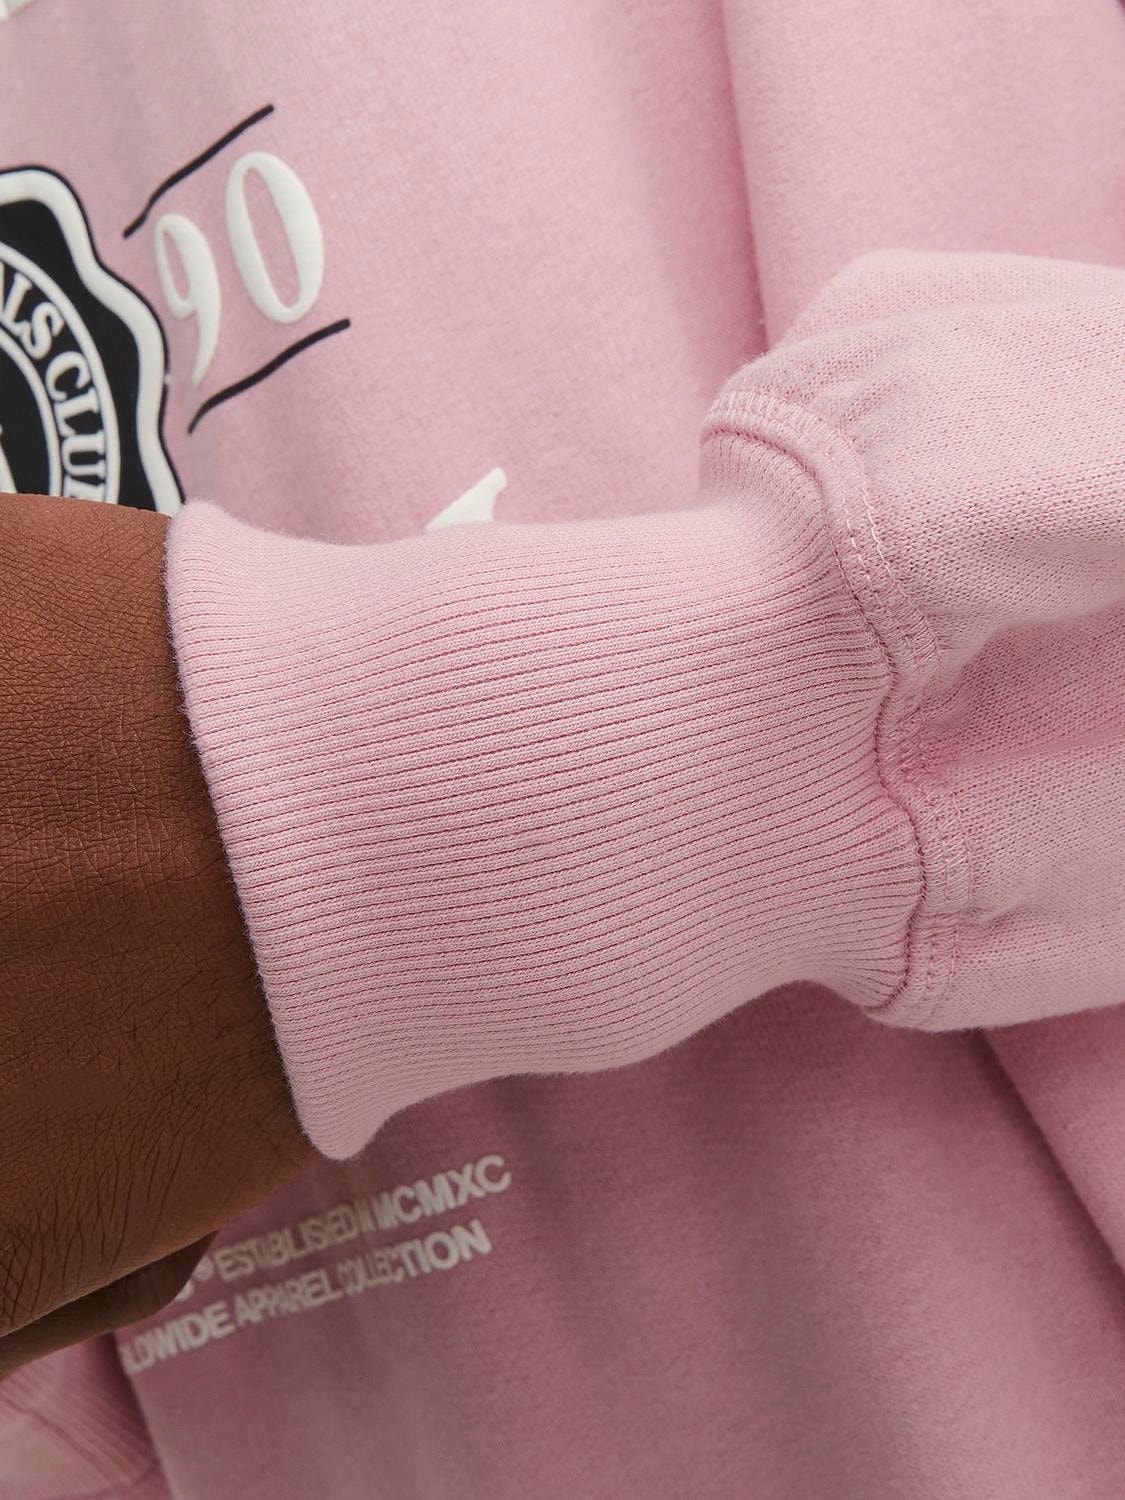 Jack & Jones Logo Crew neck Sweatshirt -Pink Nectar - 12252052